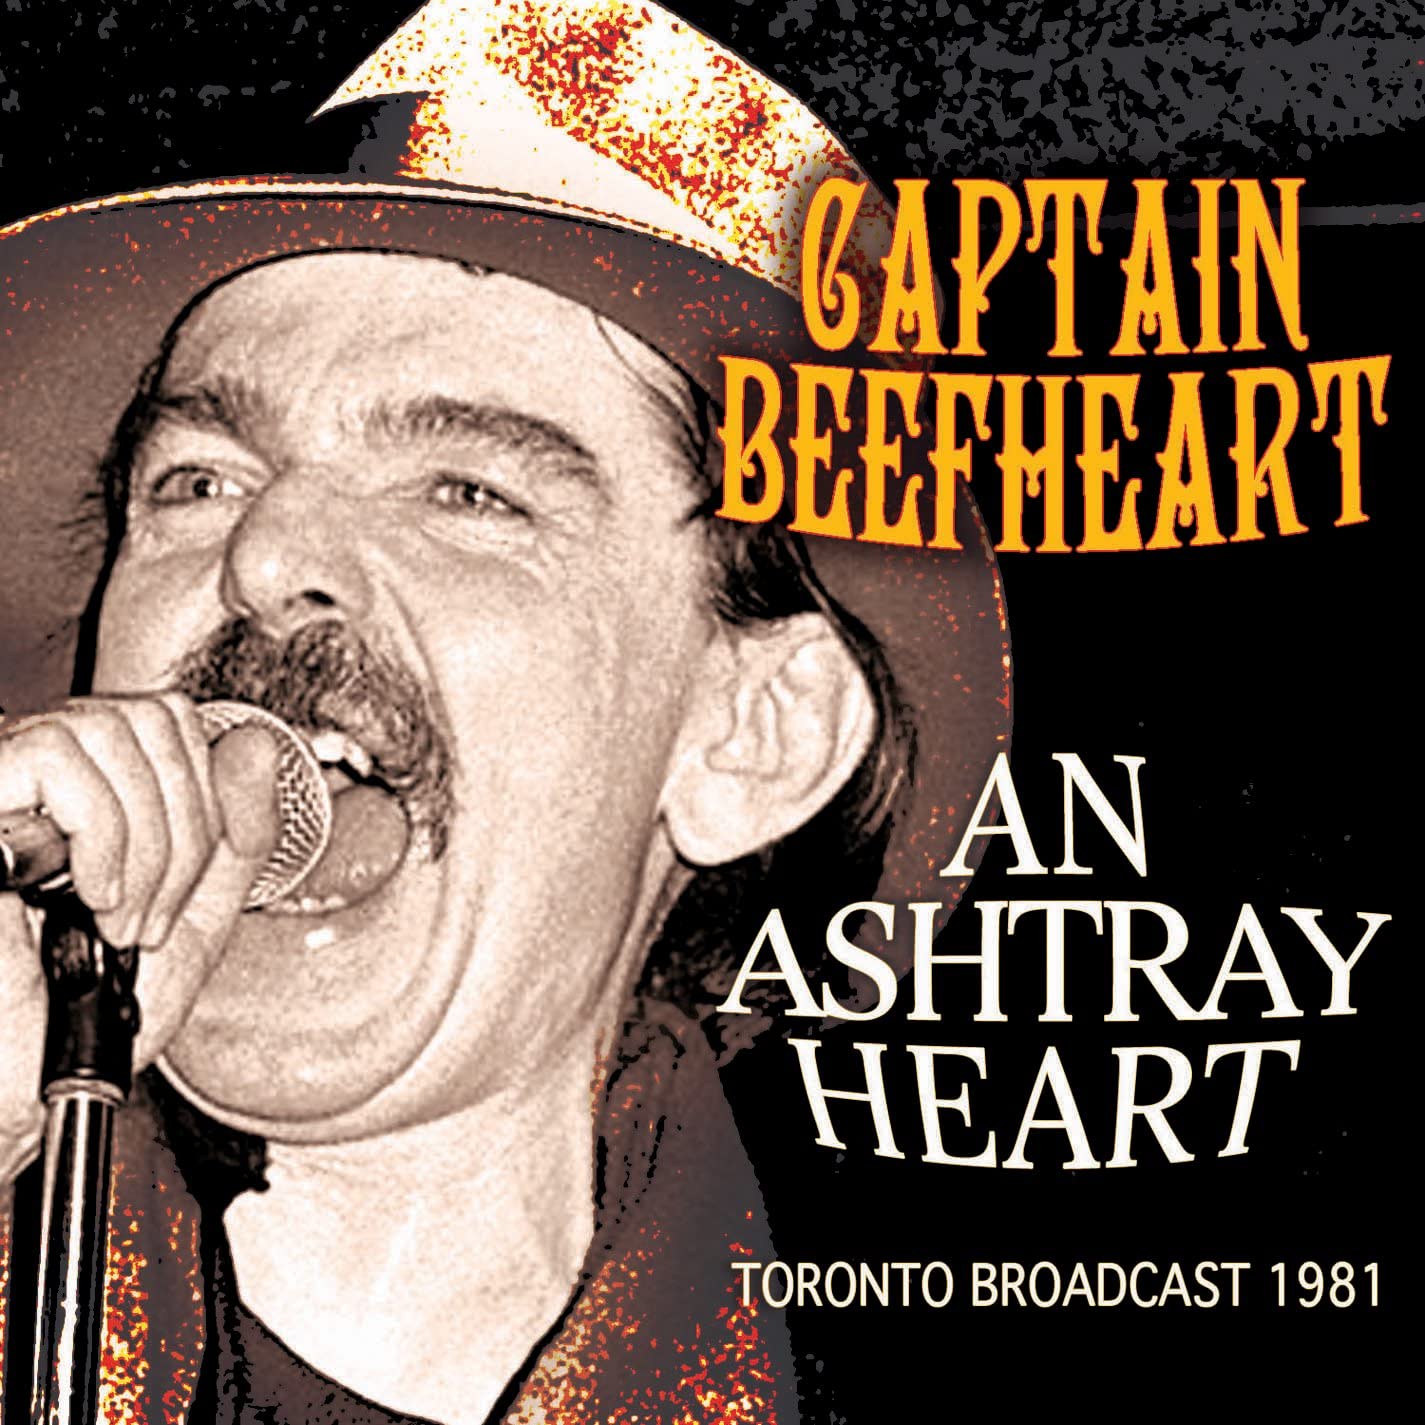 Captain Beefheart - An Ashtray Heart- CD